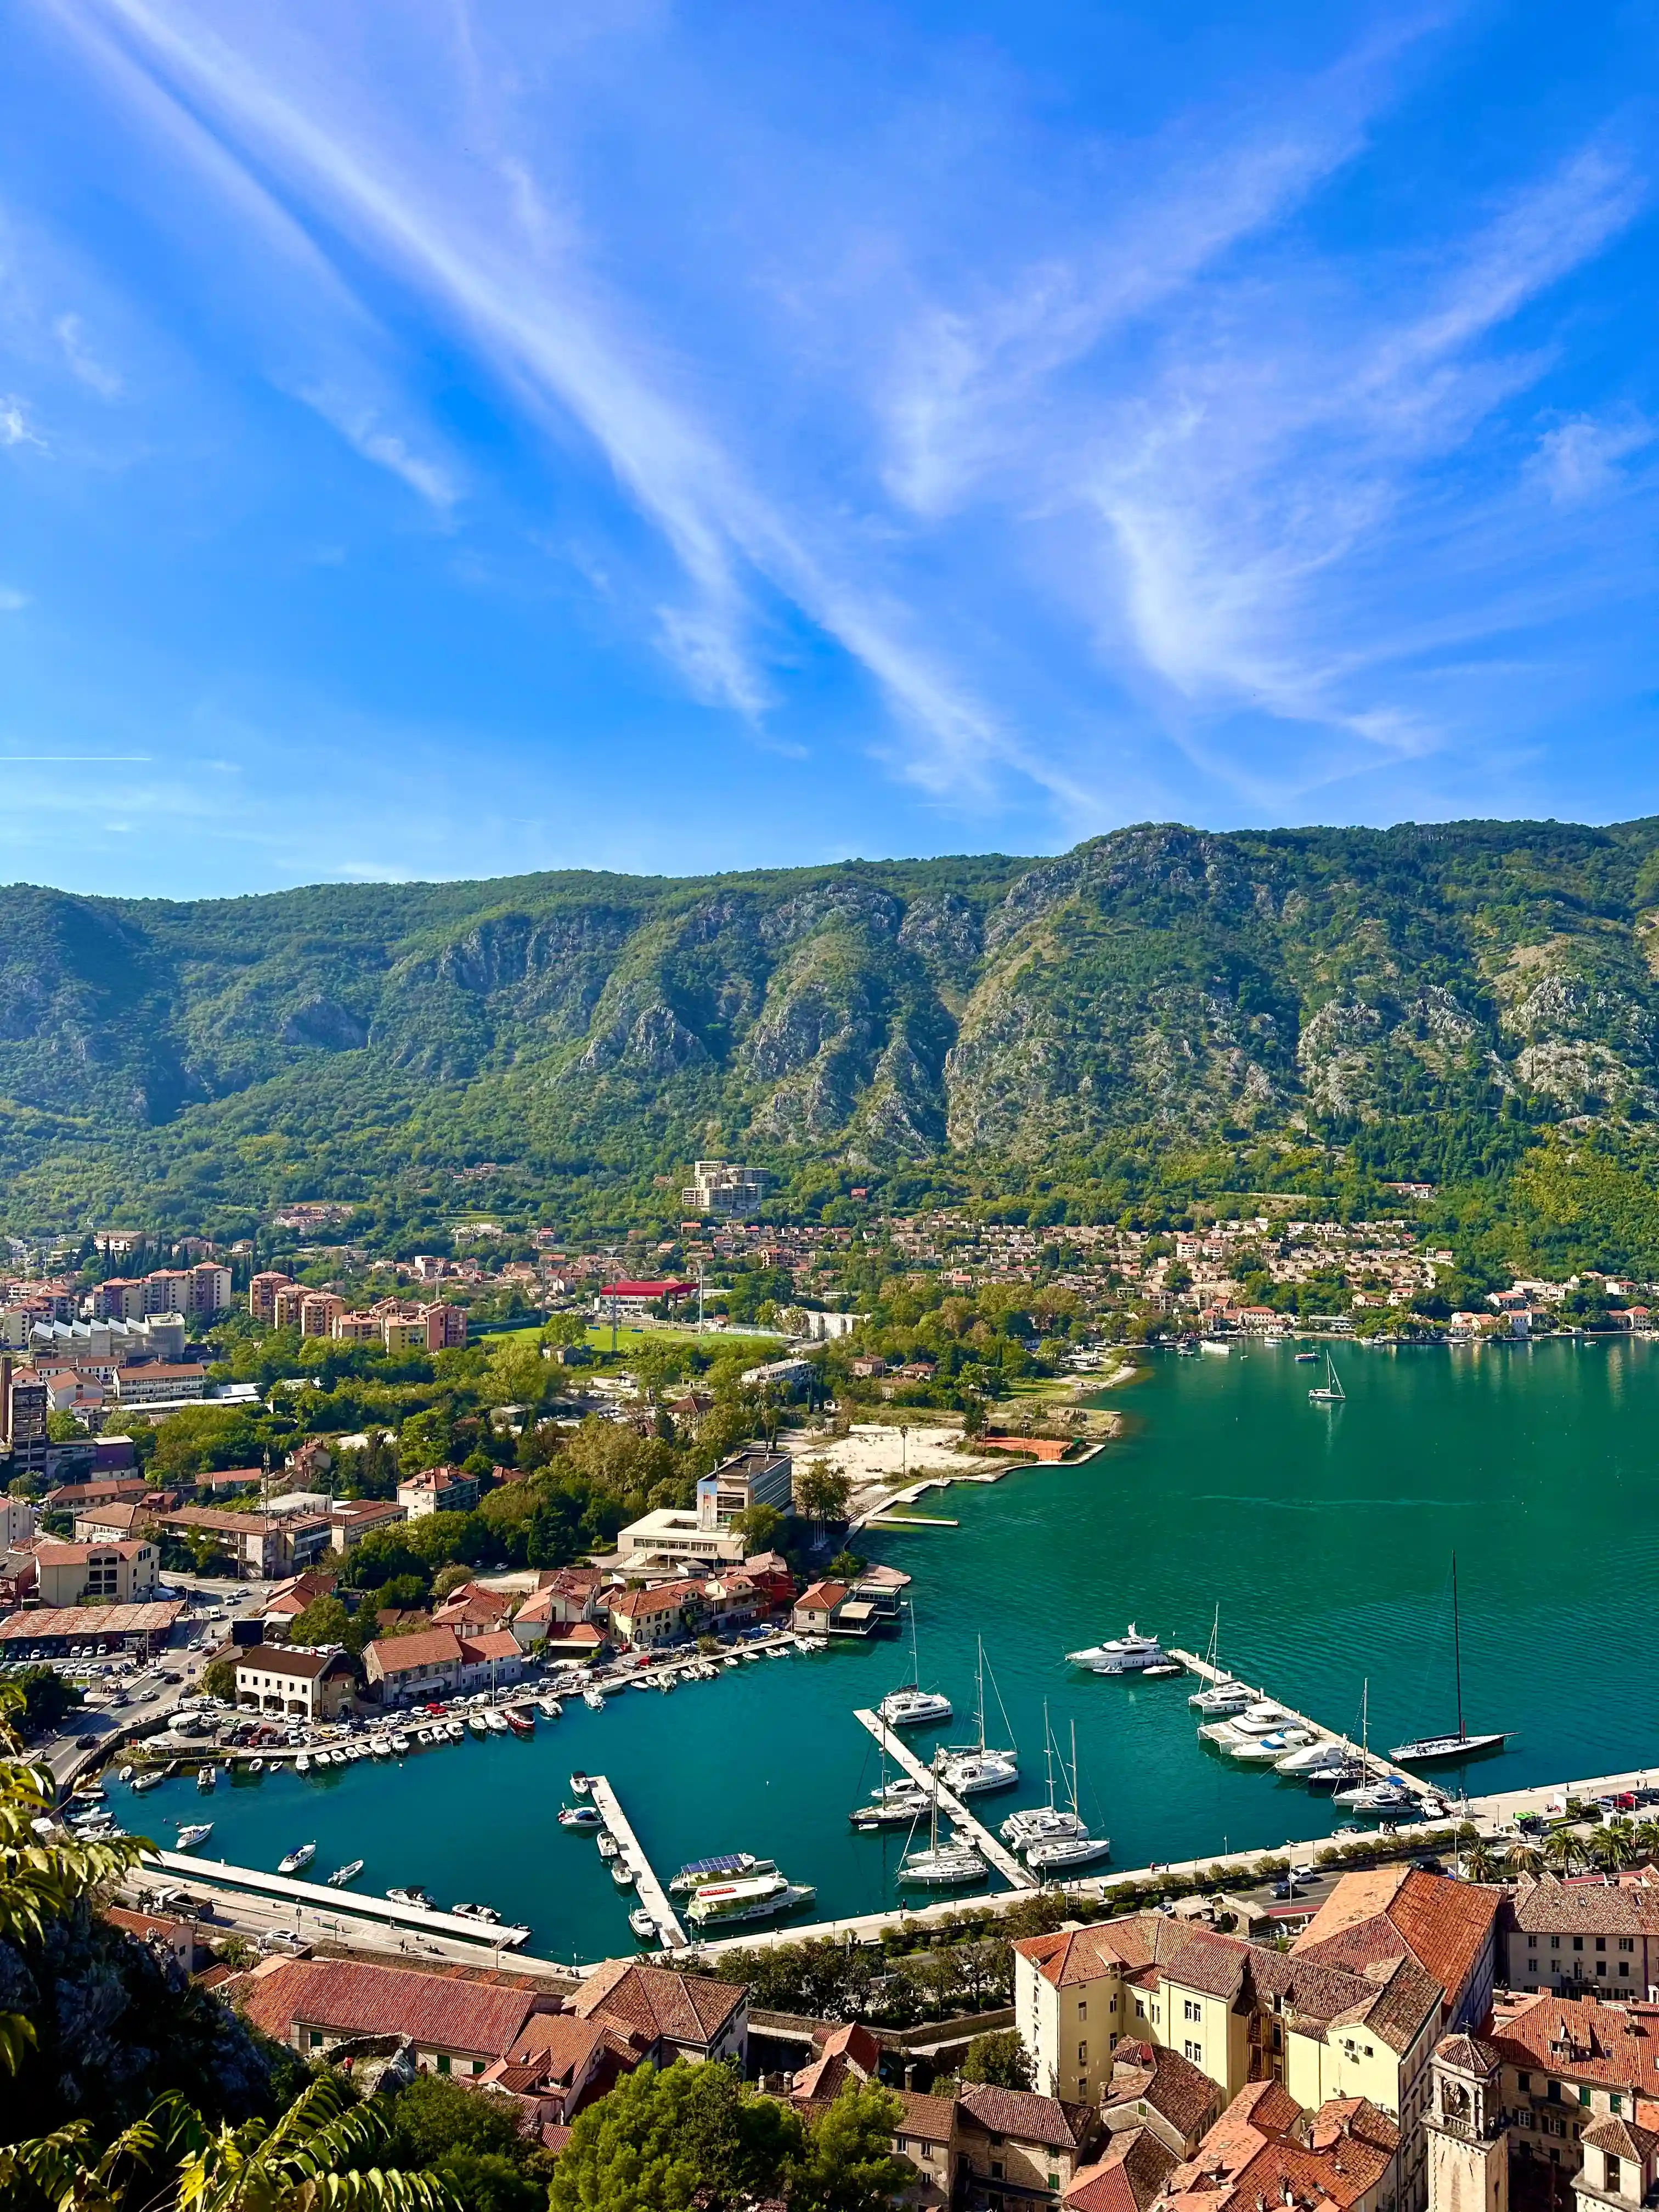 Imagine Is Kotor Montenegro walkable? in Kotor